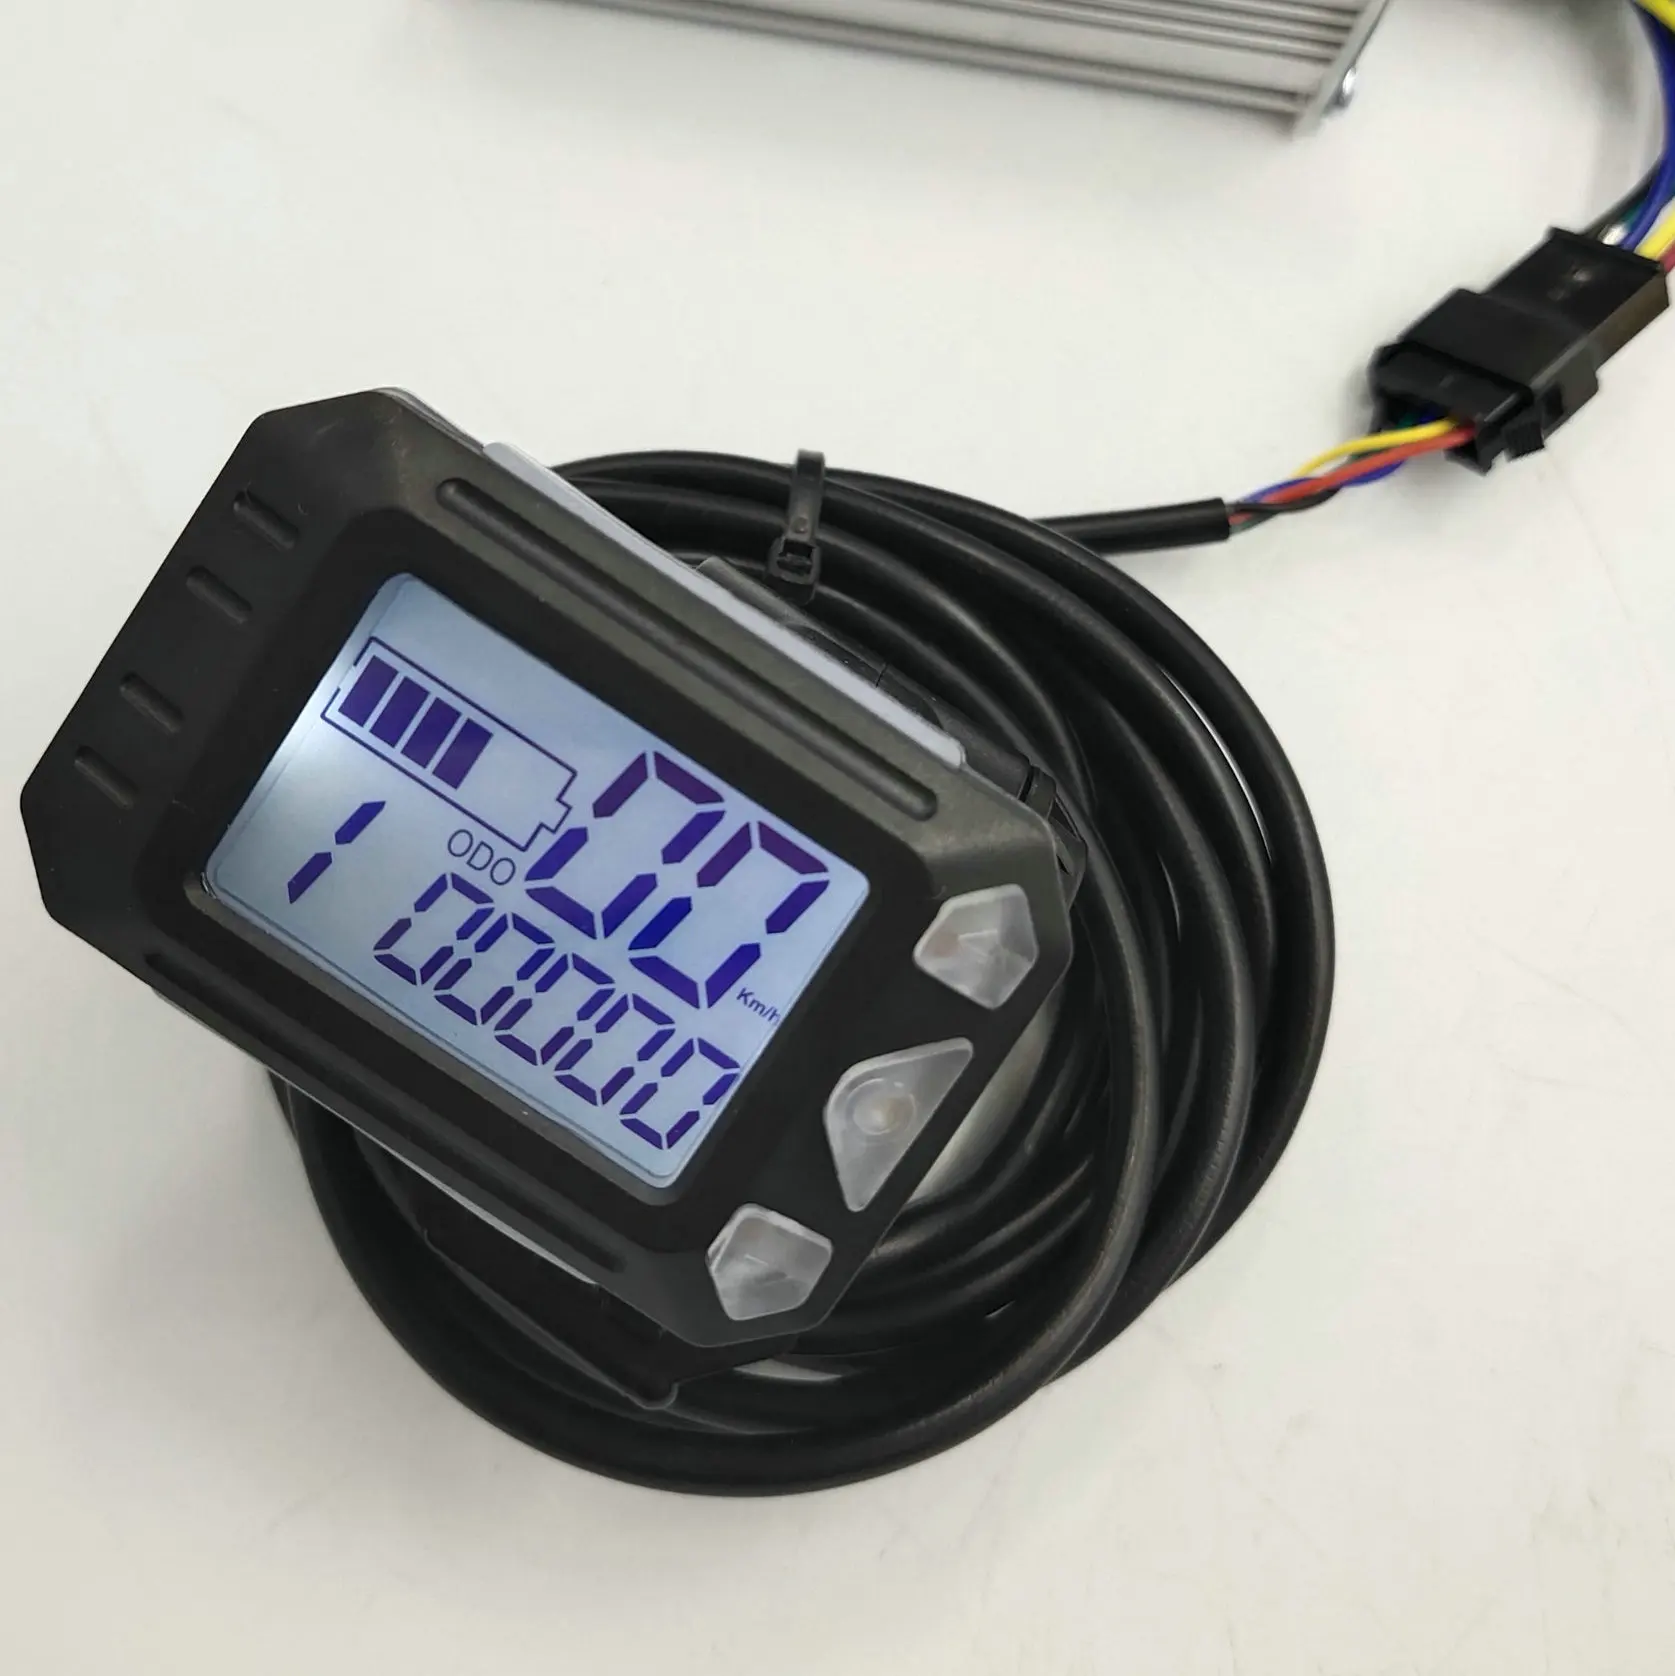 Tanie Prędkościomierz wskaźnik poziomu baterii wyświetlacz LCD z kciukiem przepustnicy Shifter dla elektryczny